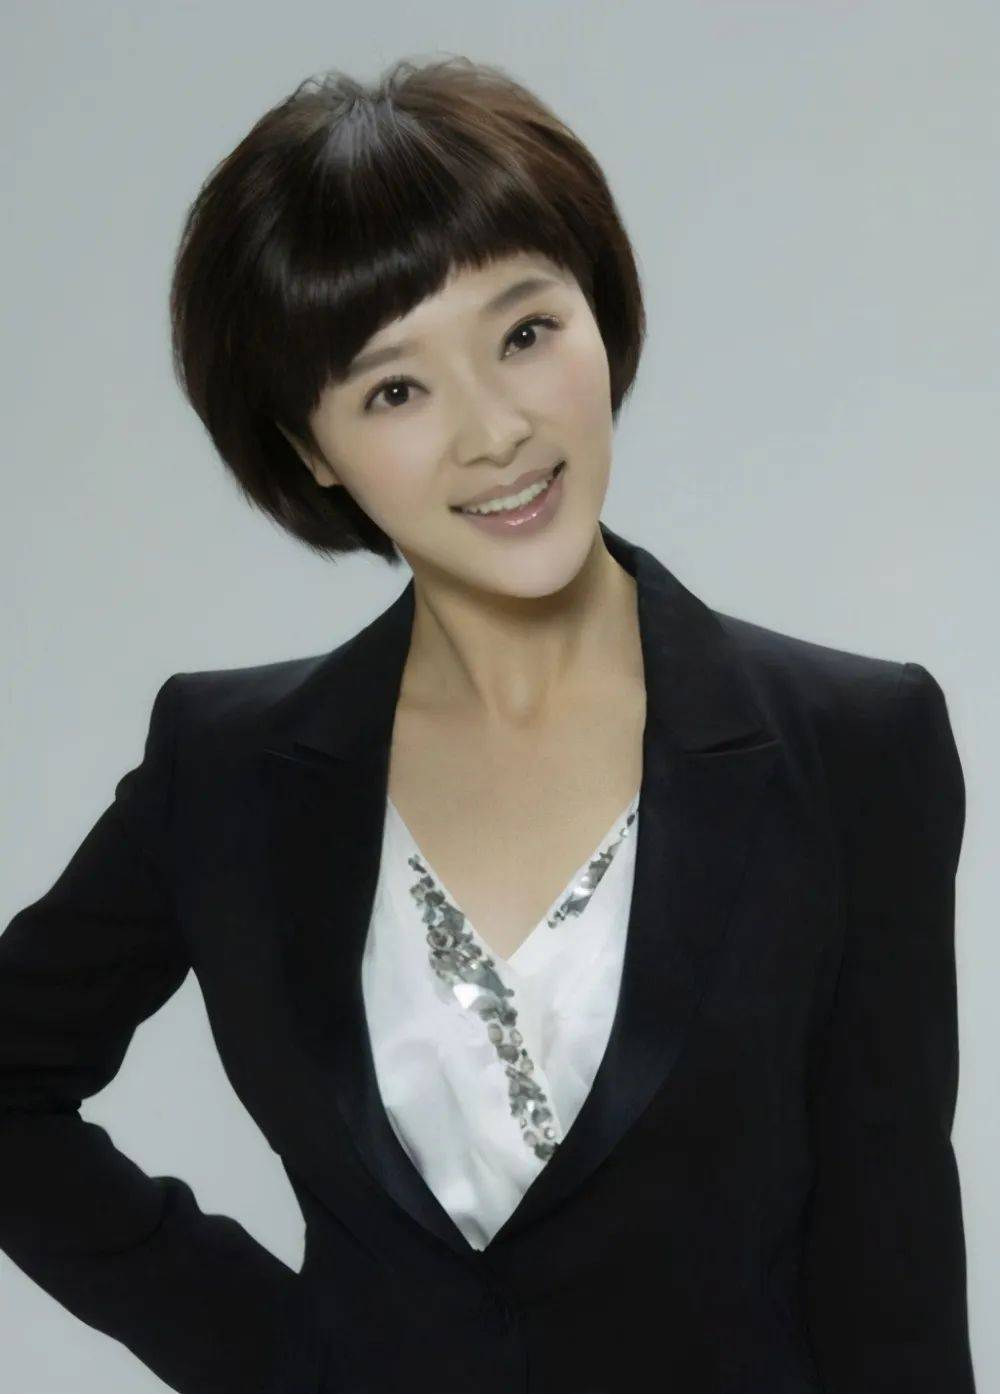 在2008年的时候,进入央视,担任《今日亚洲》,《中国新闻》的主持人